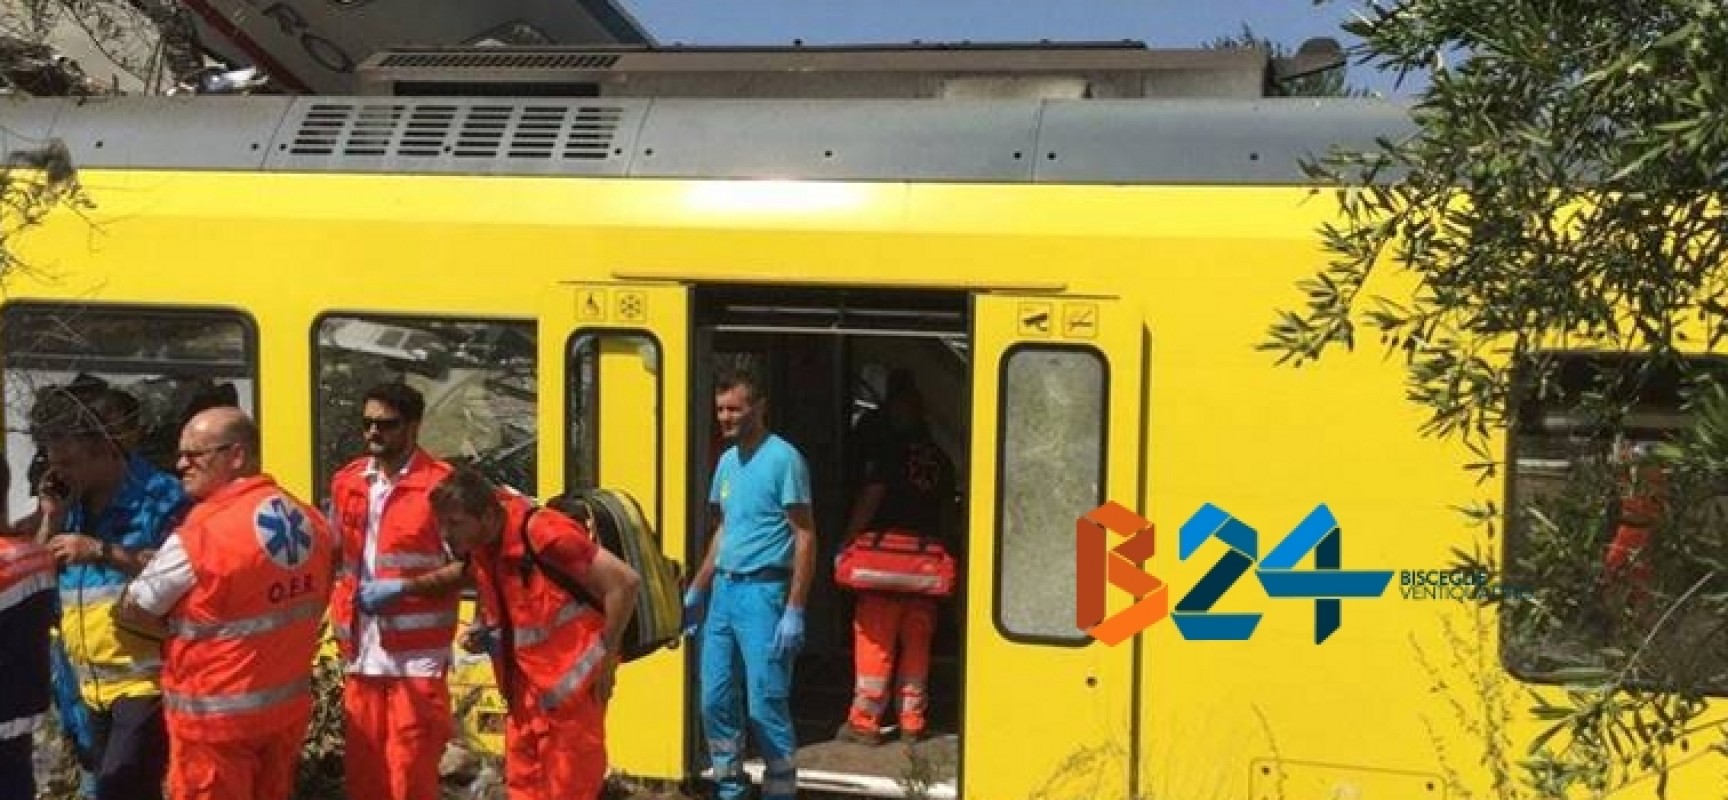 Strage ferroviaria: tra i soccorritori anche l’Oer Bisceglie, “Immagini difficili da dimenticare” / FOTO